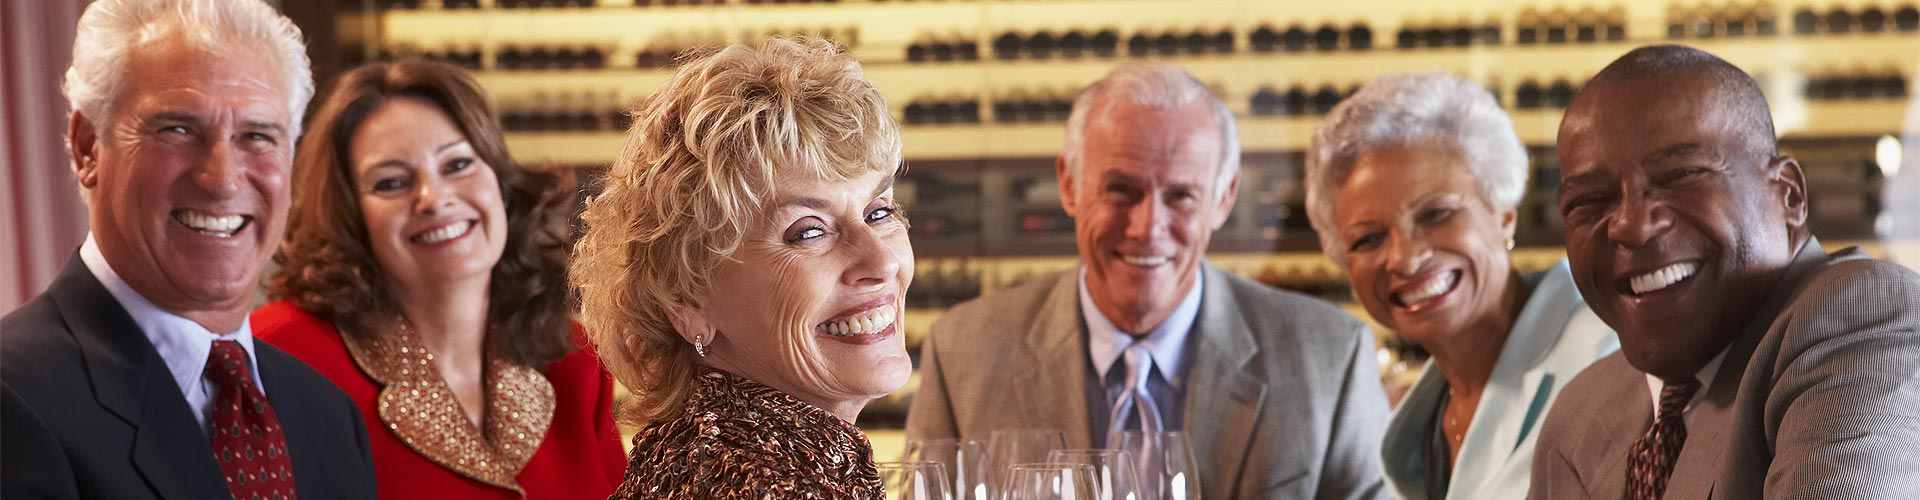 Restaurantes para jubilaciones 2021 en Zierbena